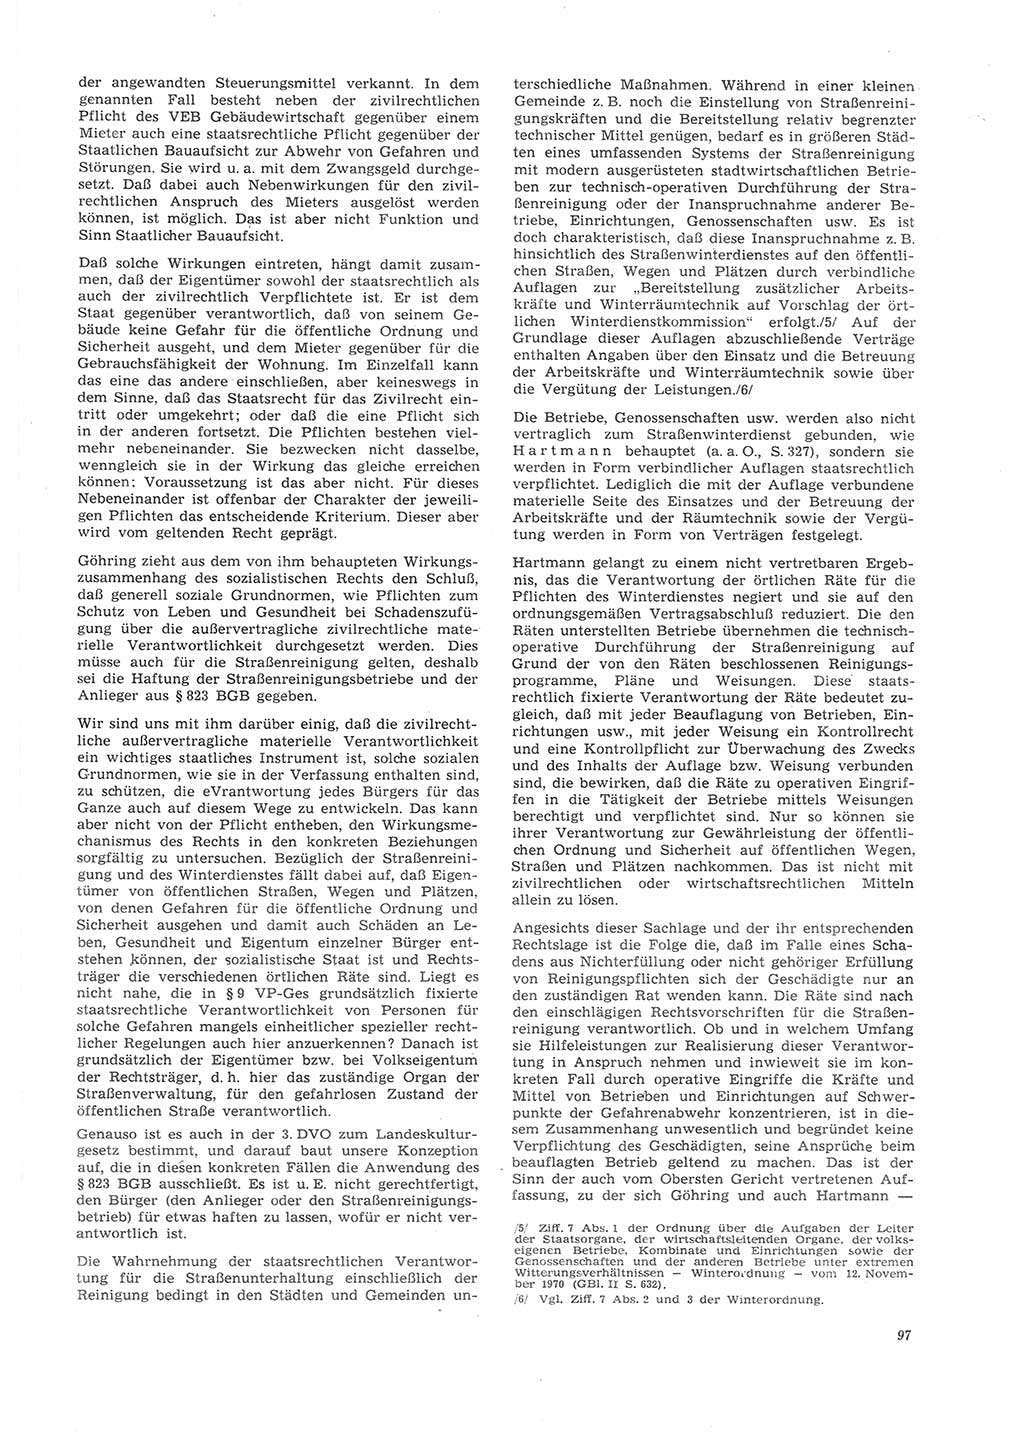 Neue Justiz (NJ), Zeitschrift für Recht und Rechtswissenschaft [Deutsche Demokratische Republik (DDR)], 26. Jahrgang 1972, Seite 97 (NJ DDR 1972, S. 97)